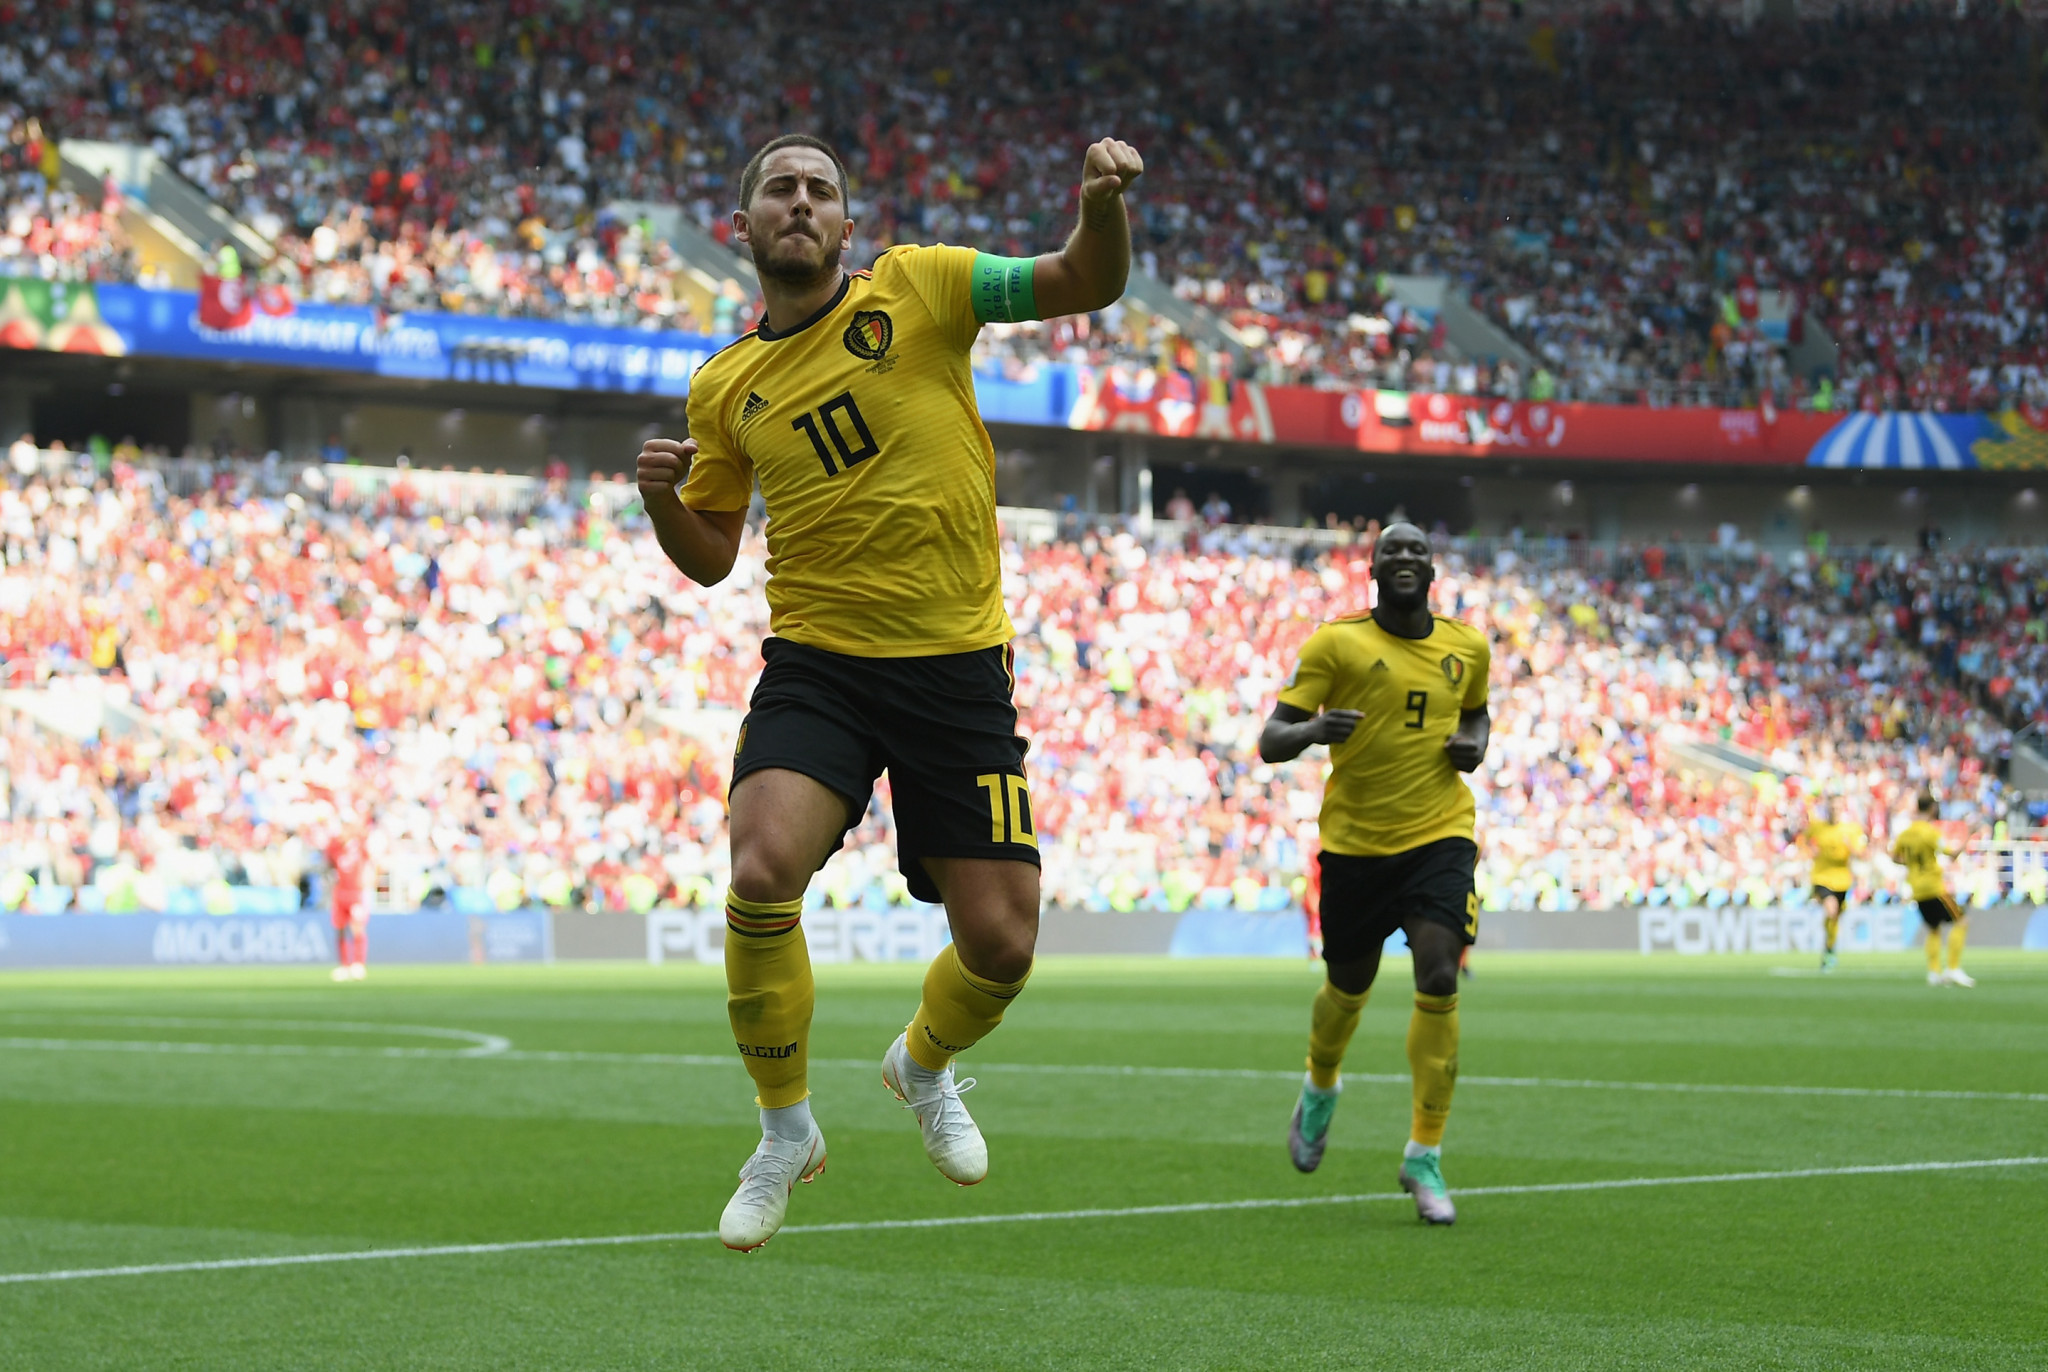 Eden Hazard matched Lukaku's two goals ©Getty Images